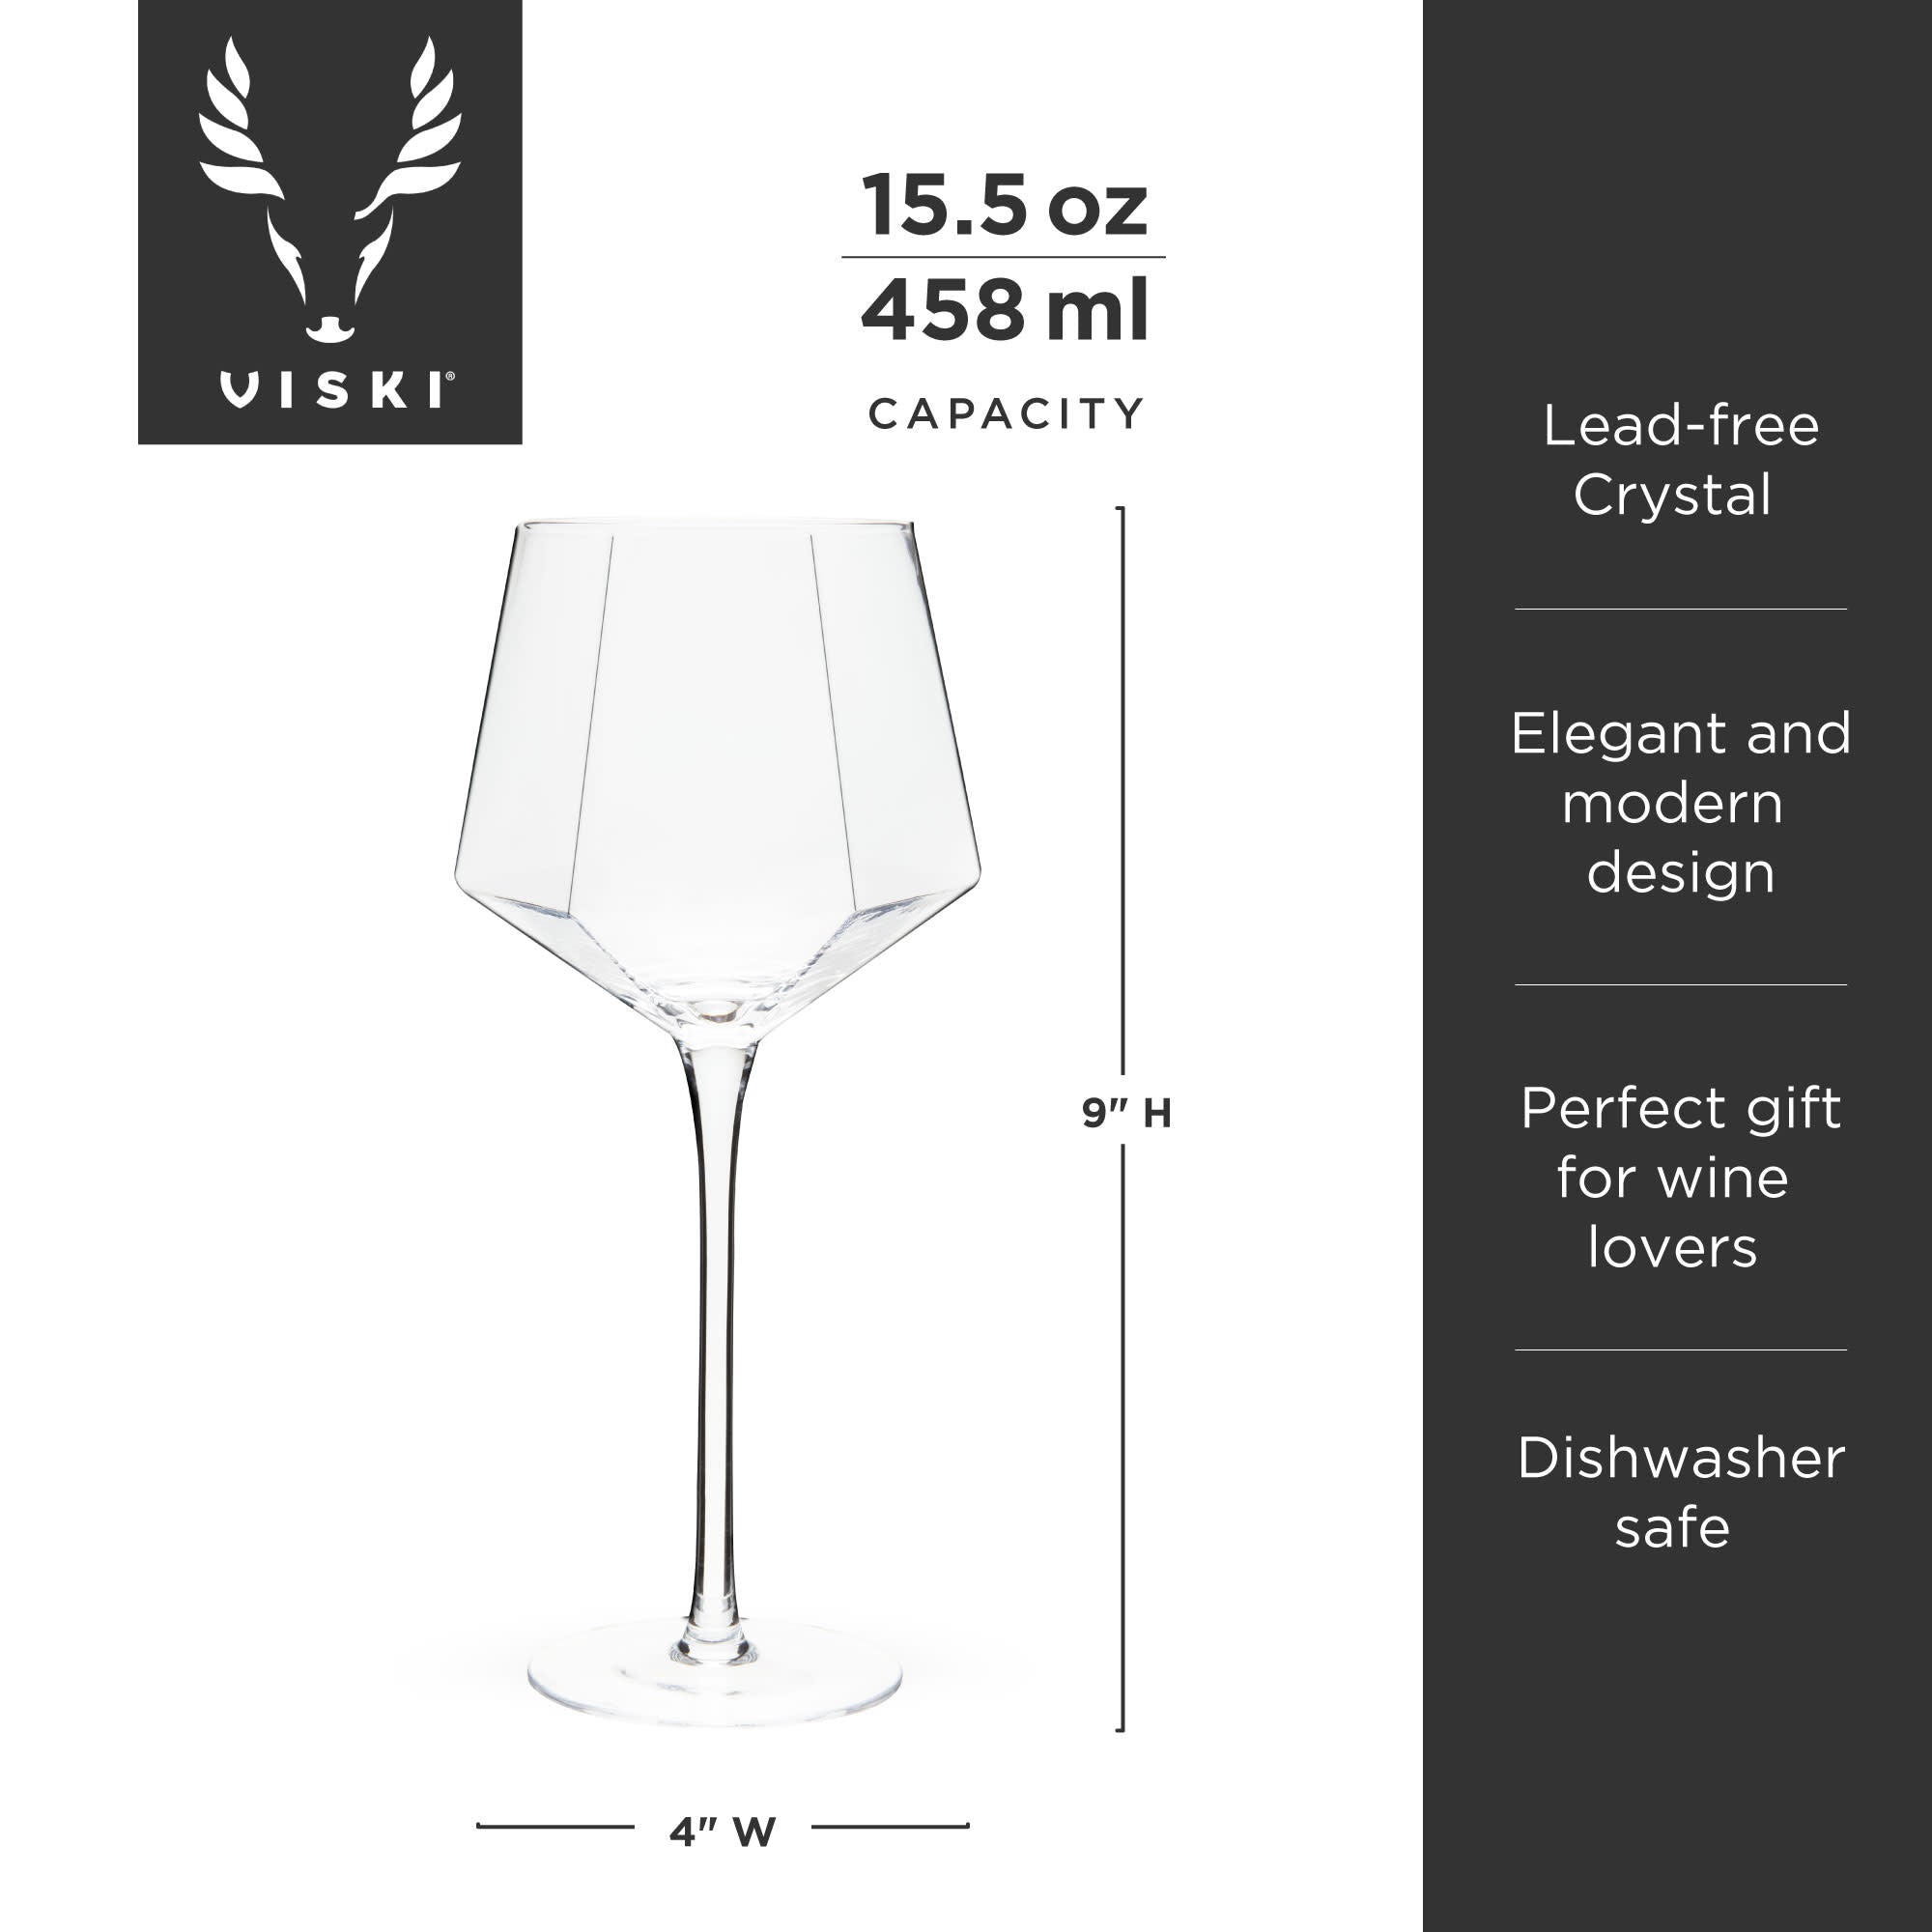 Seneca Wine Glass by Viski (11080)